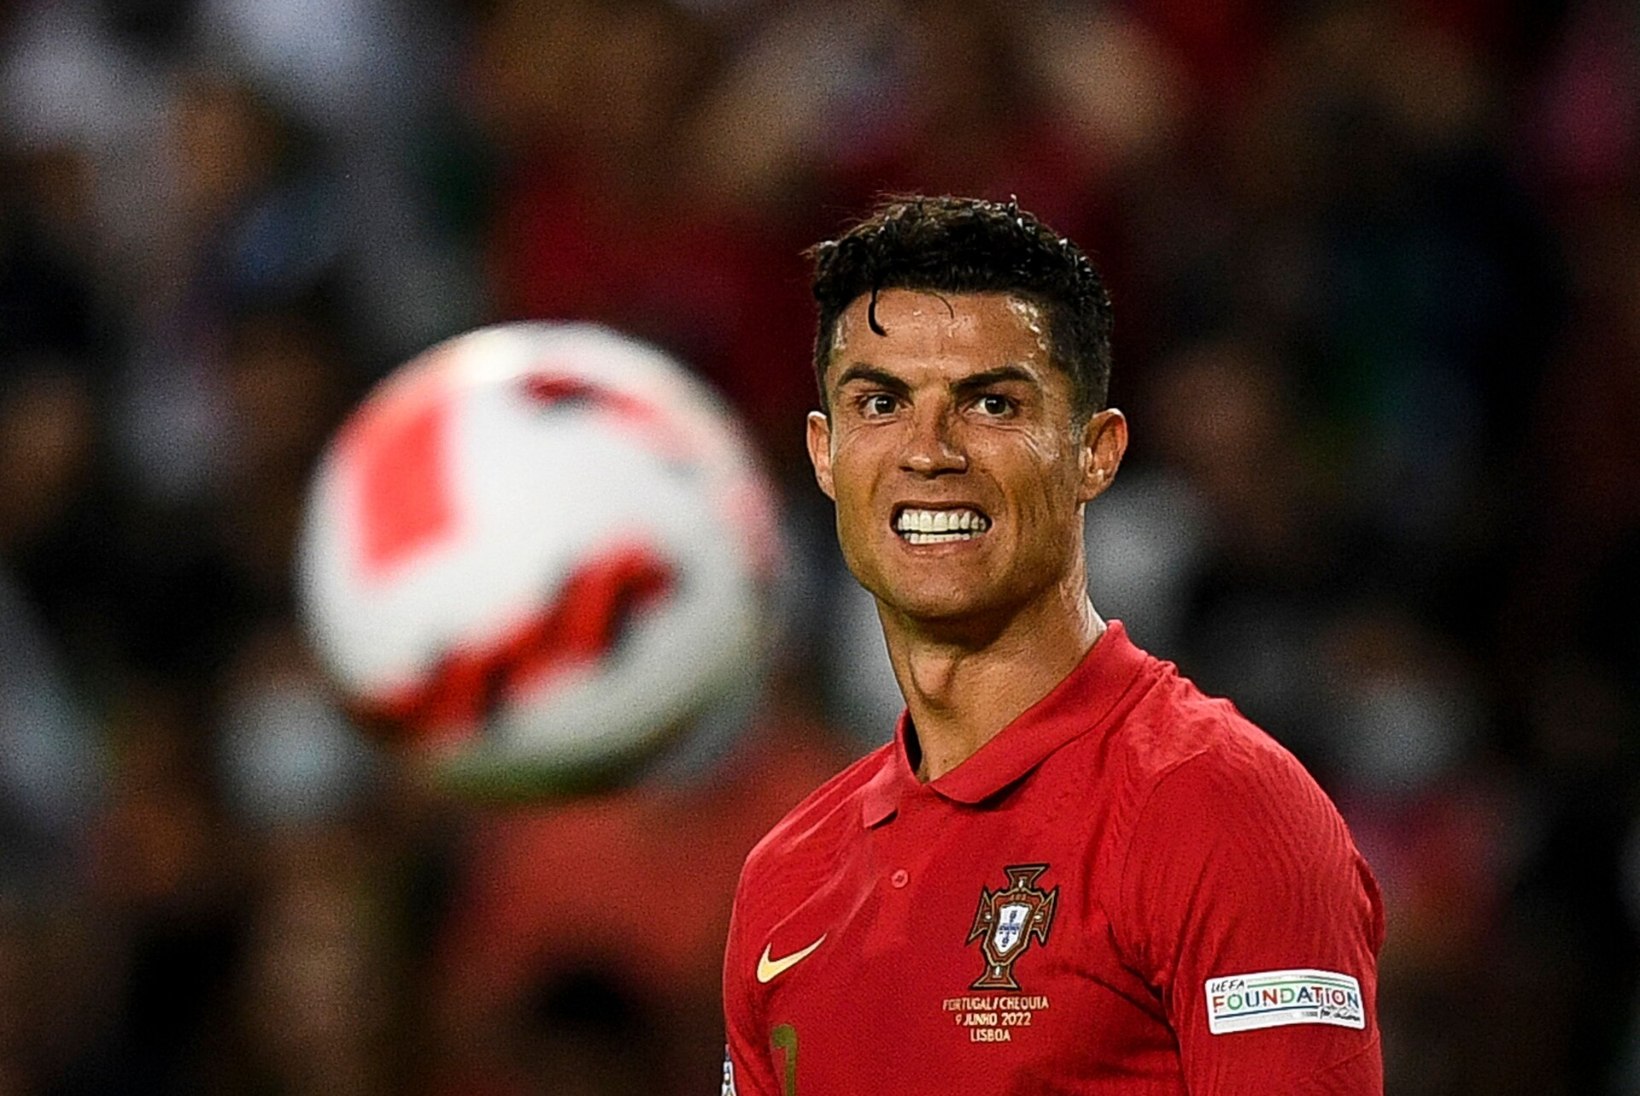 United ei kavatse Ronaldot kodusele rivaalile müüa